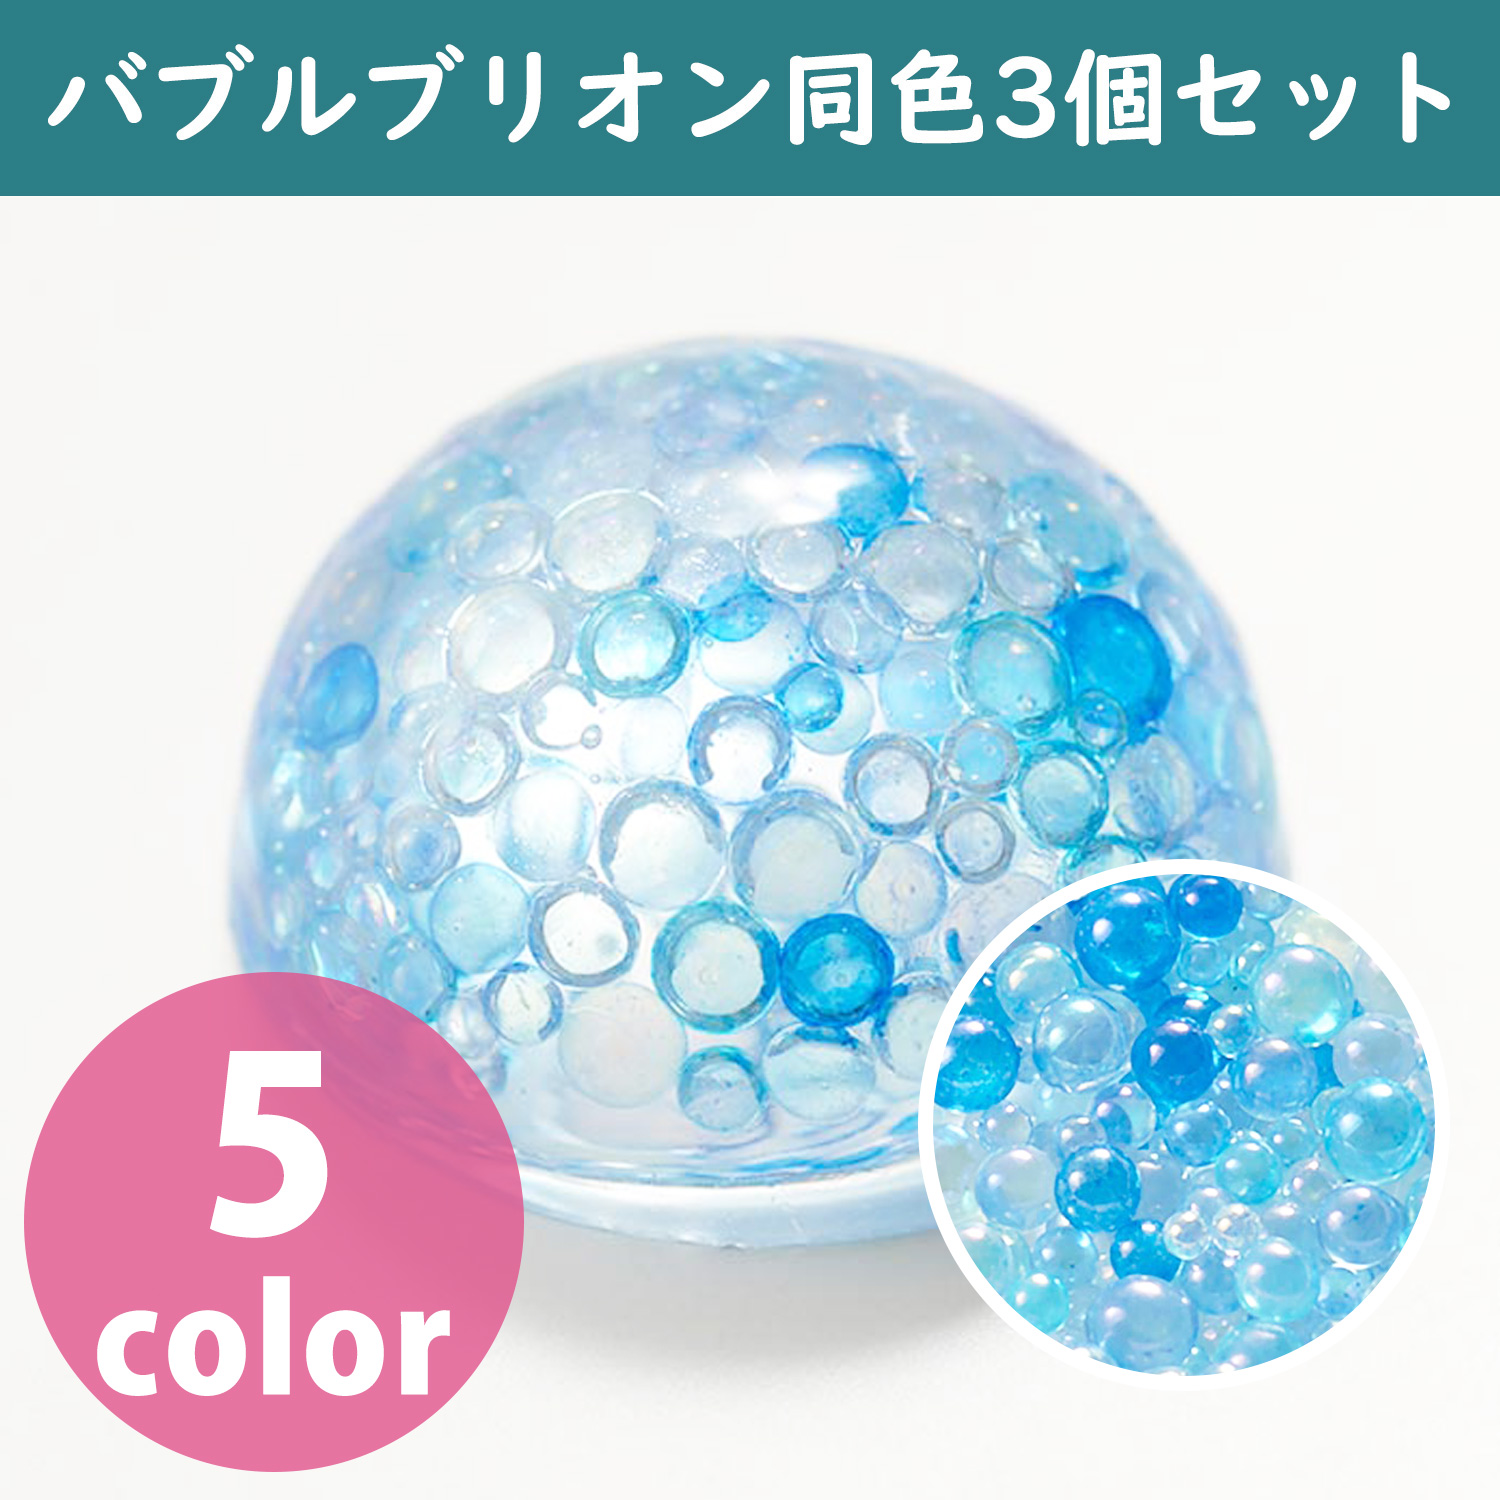 T10 Bubble Bullion Approx. φ1.4~2.8mm Same color 3 bags set (set)